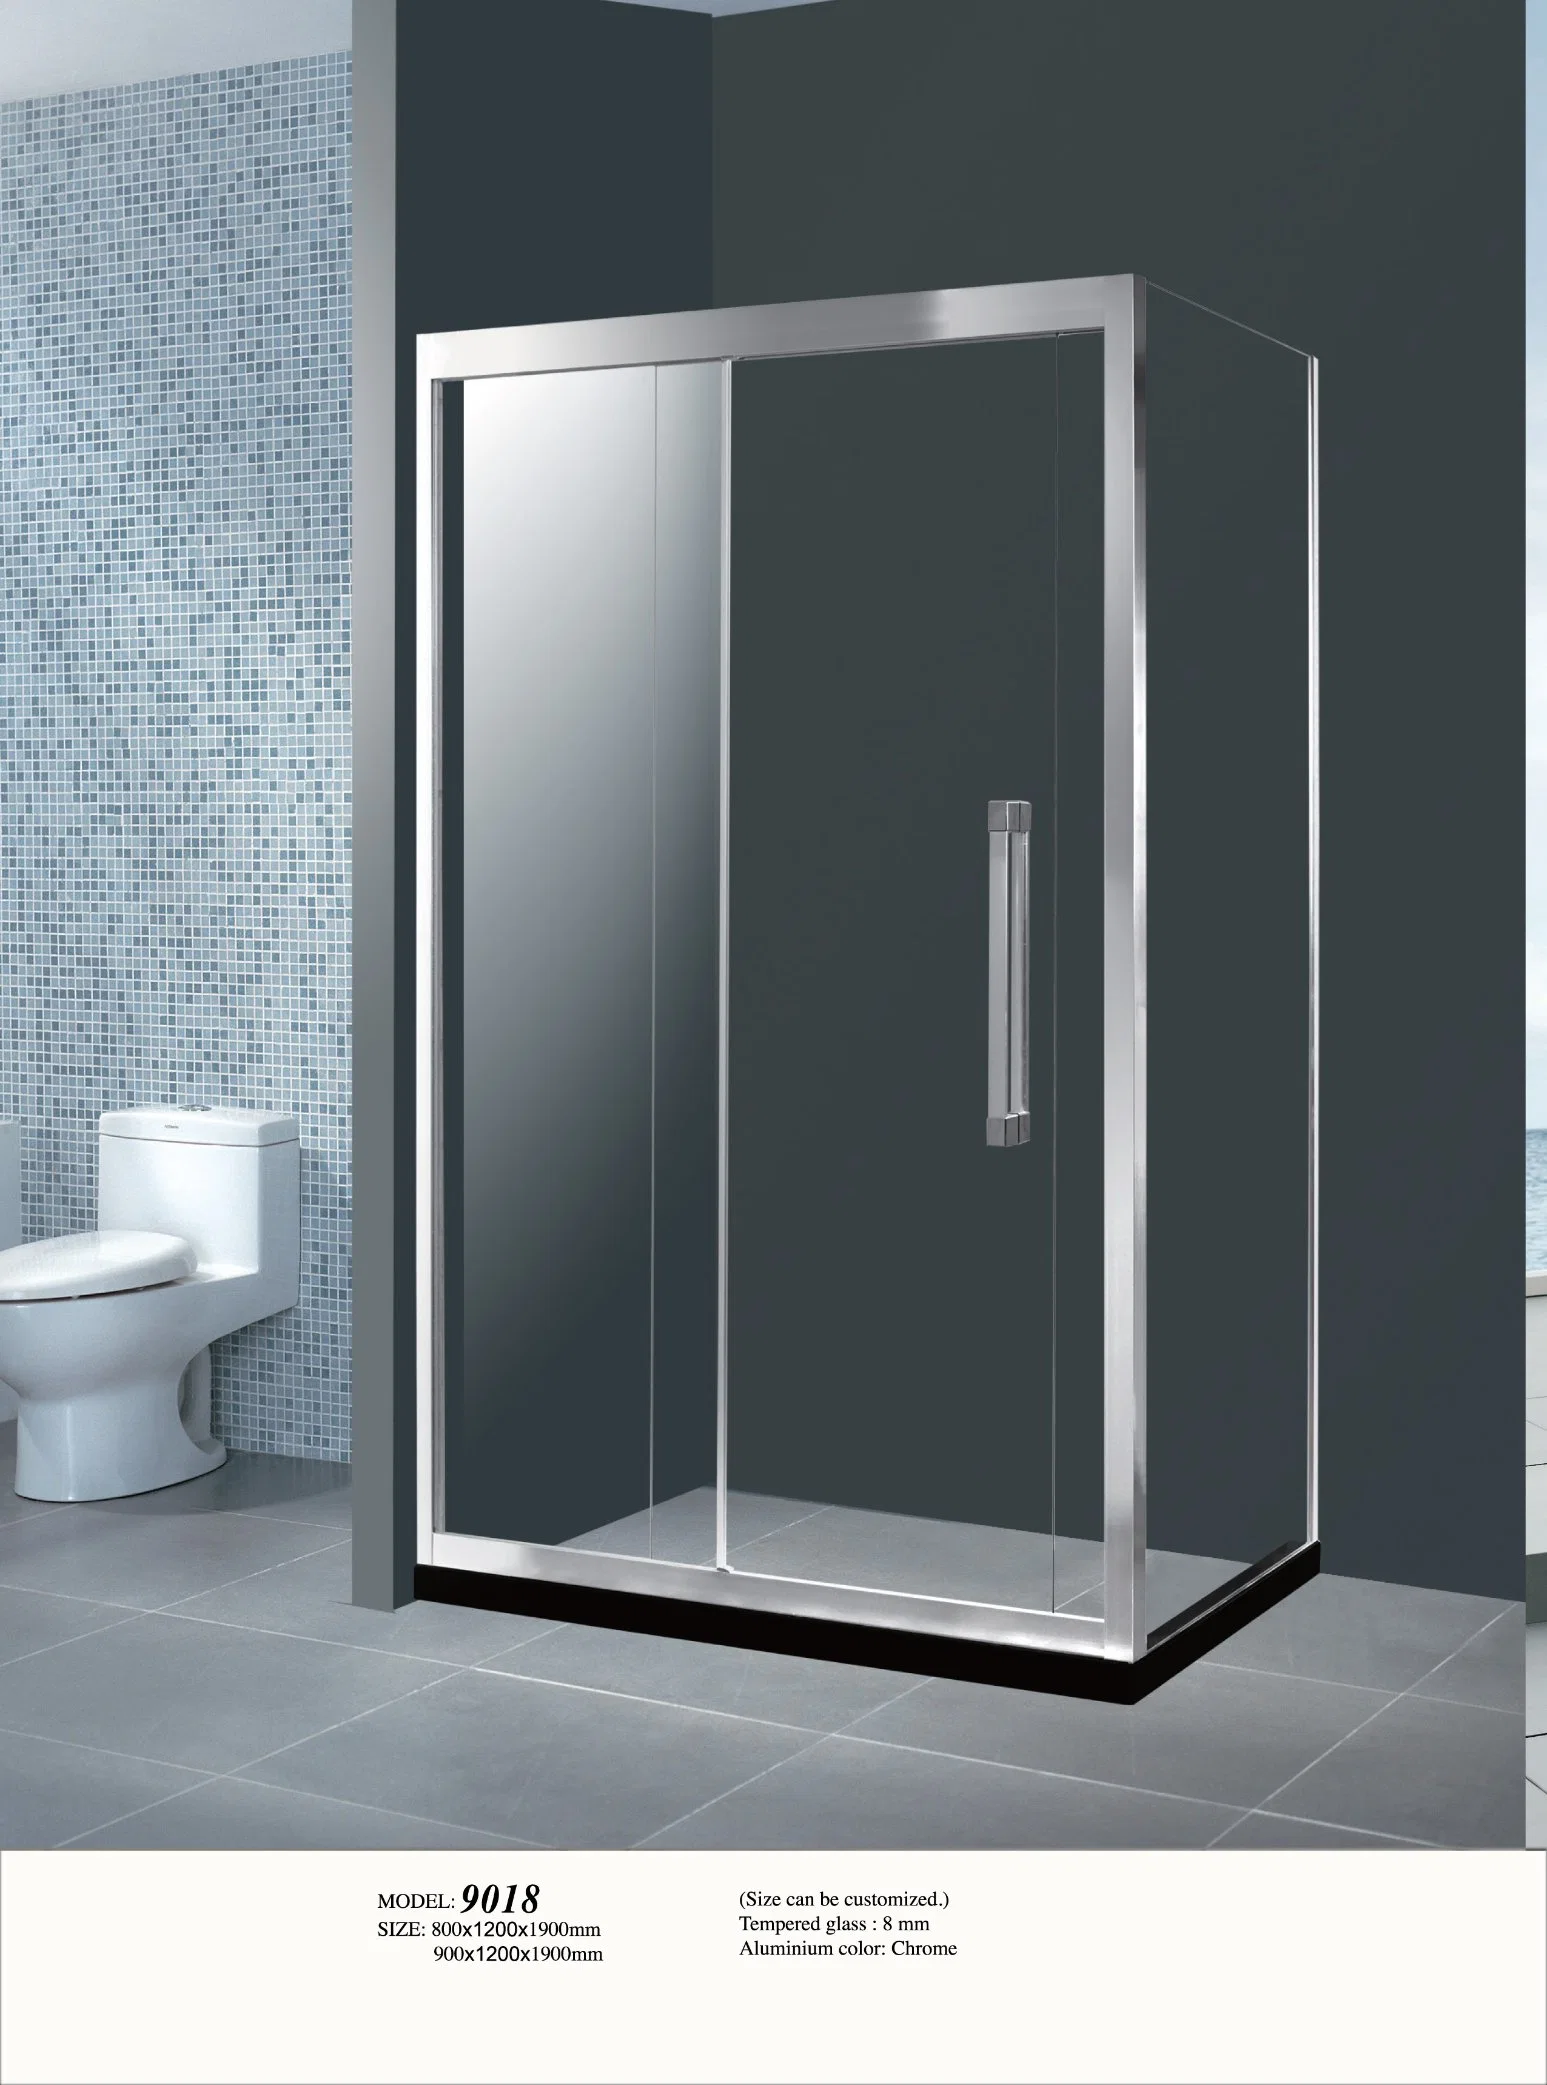 Bathroom Sliding Tempered Glass Black Shower Enclosure Door